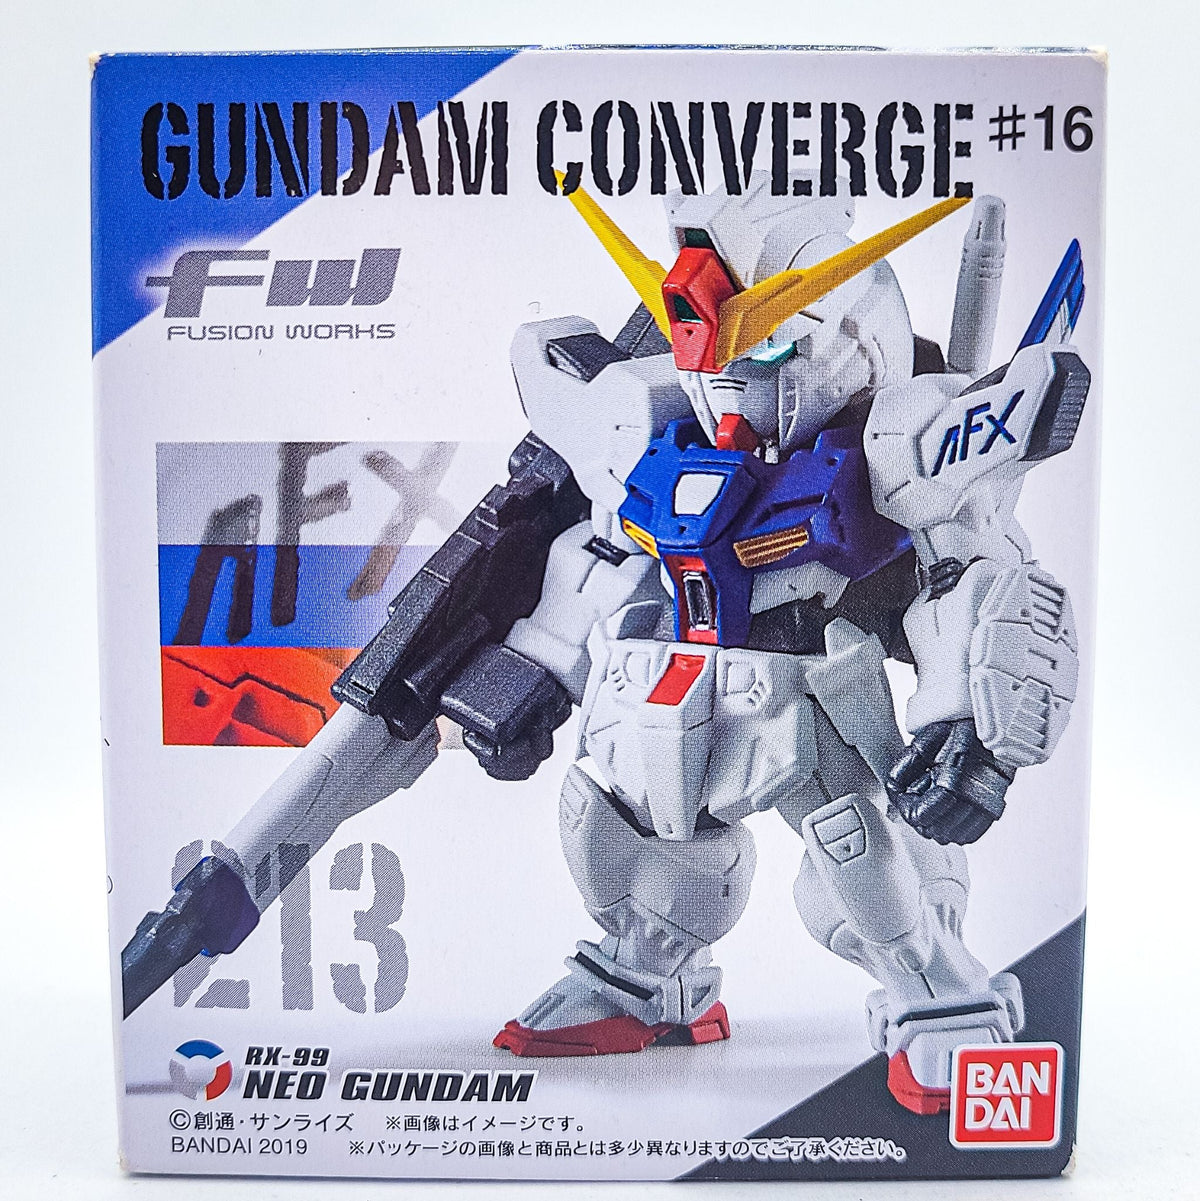 Gundam Converge #213 NEO Gundam by Bandai - 1